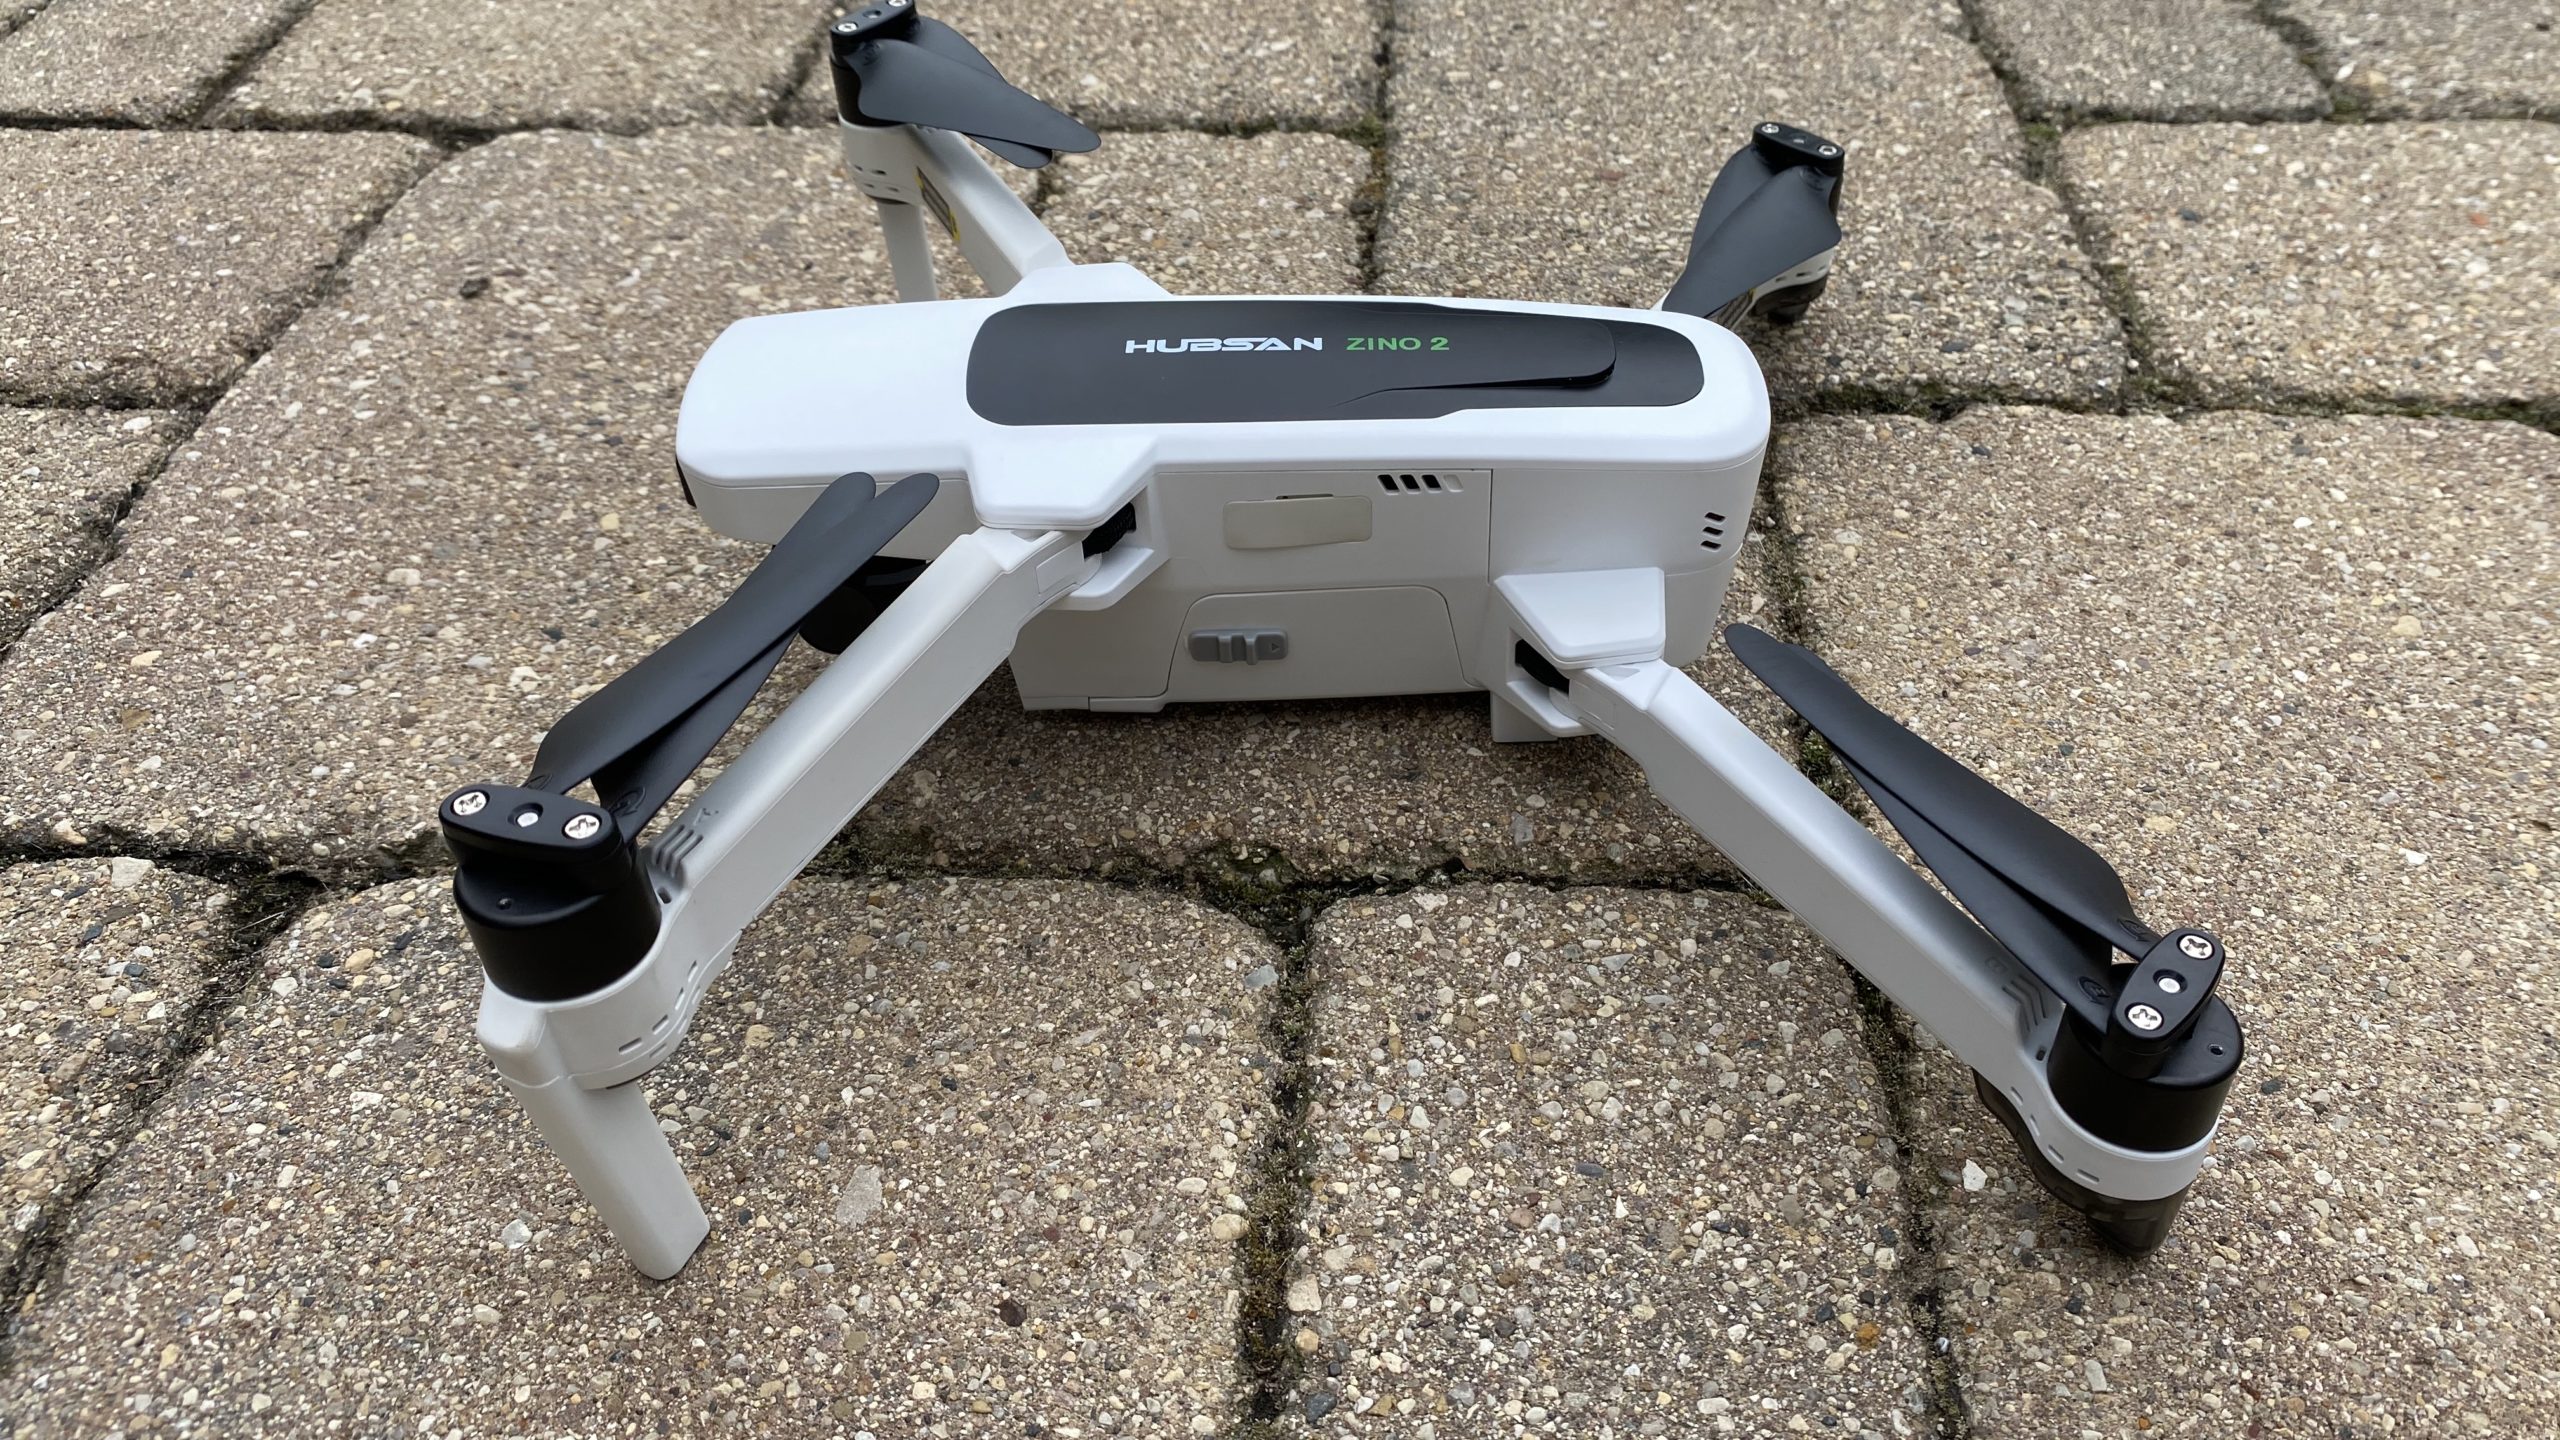 Drone Hubsan Zino 2 : semi professional camera drone